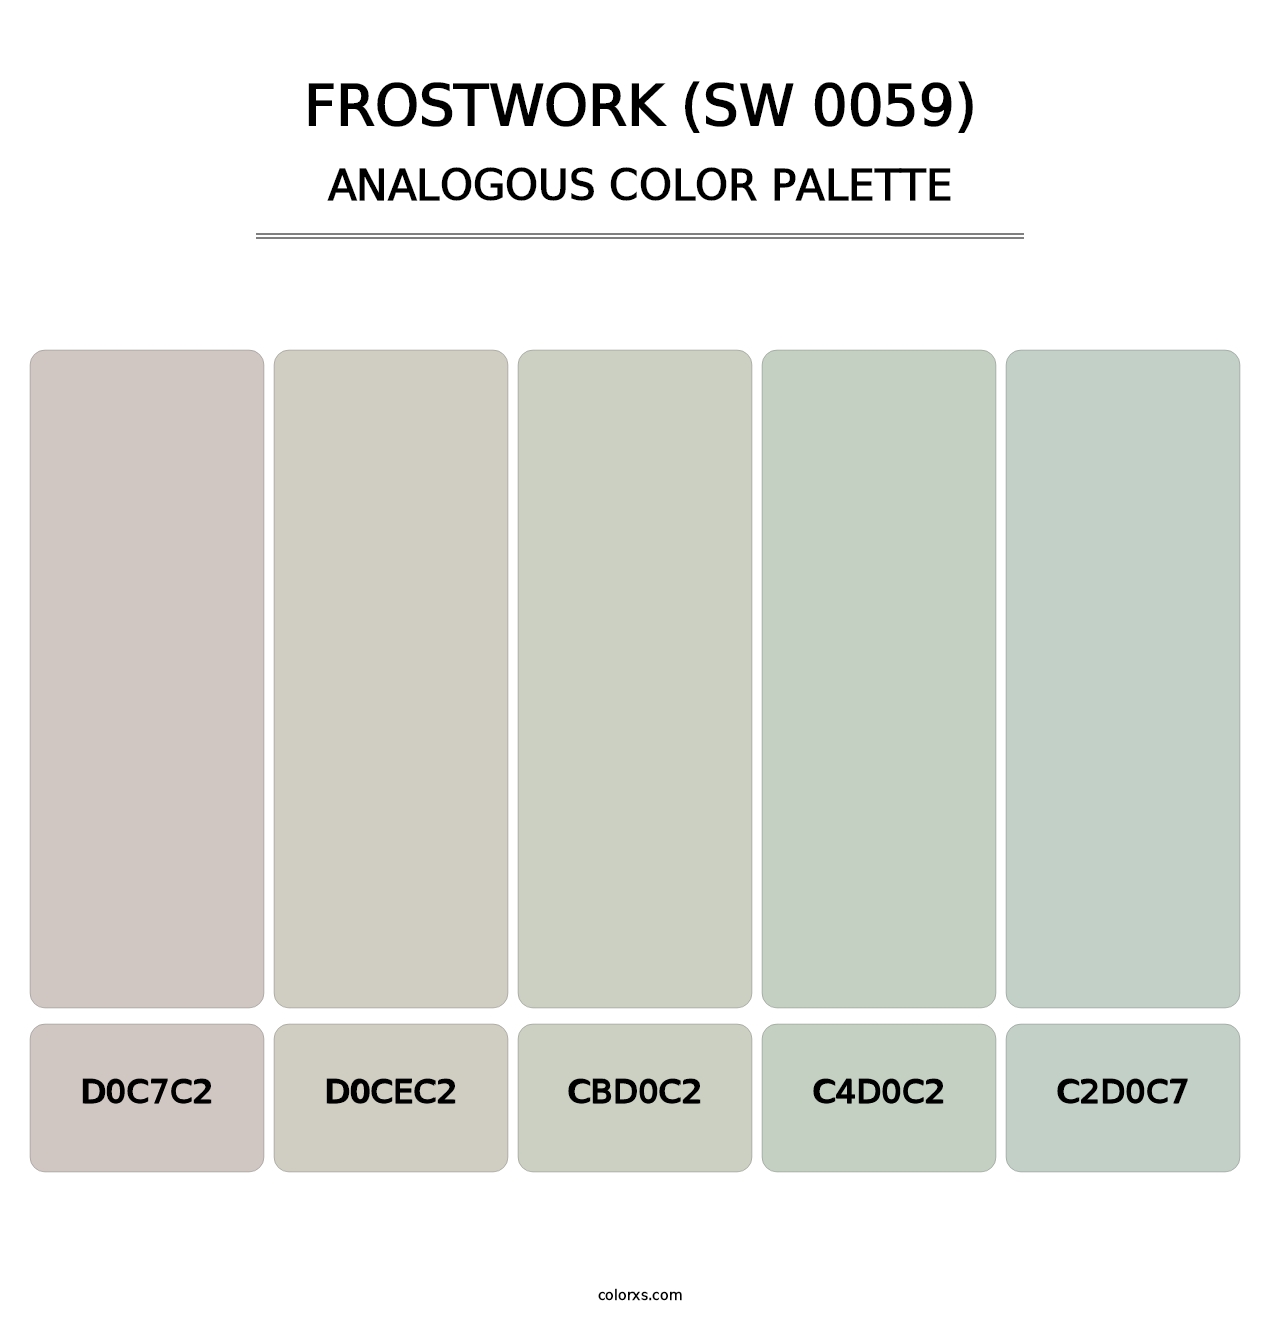 Frostwork (SW 0059) - Analogous Color Palette